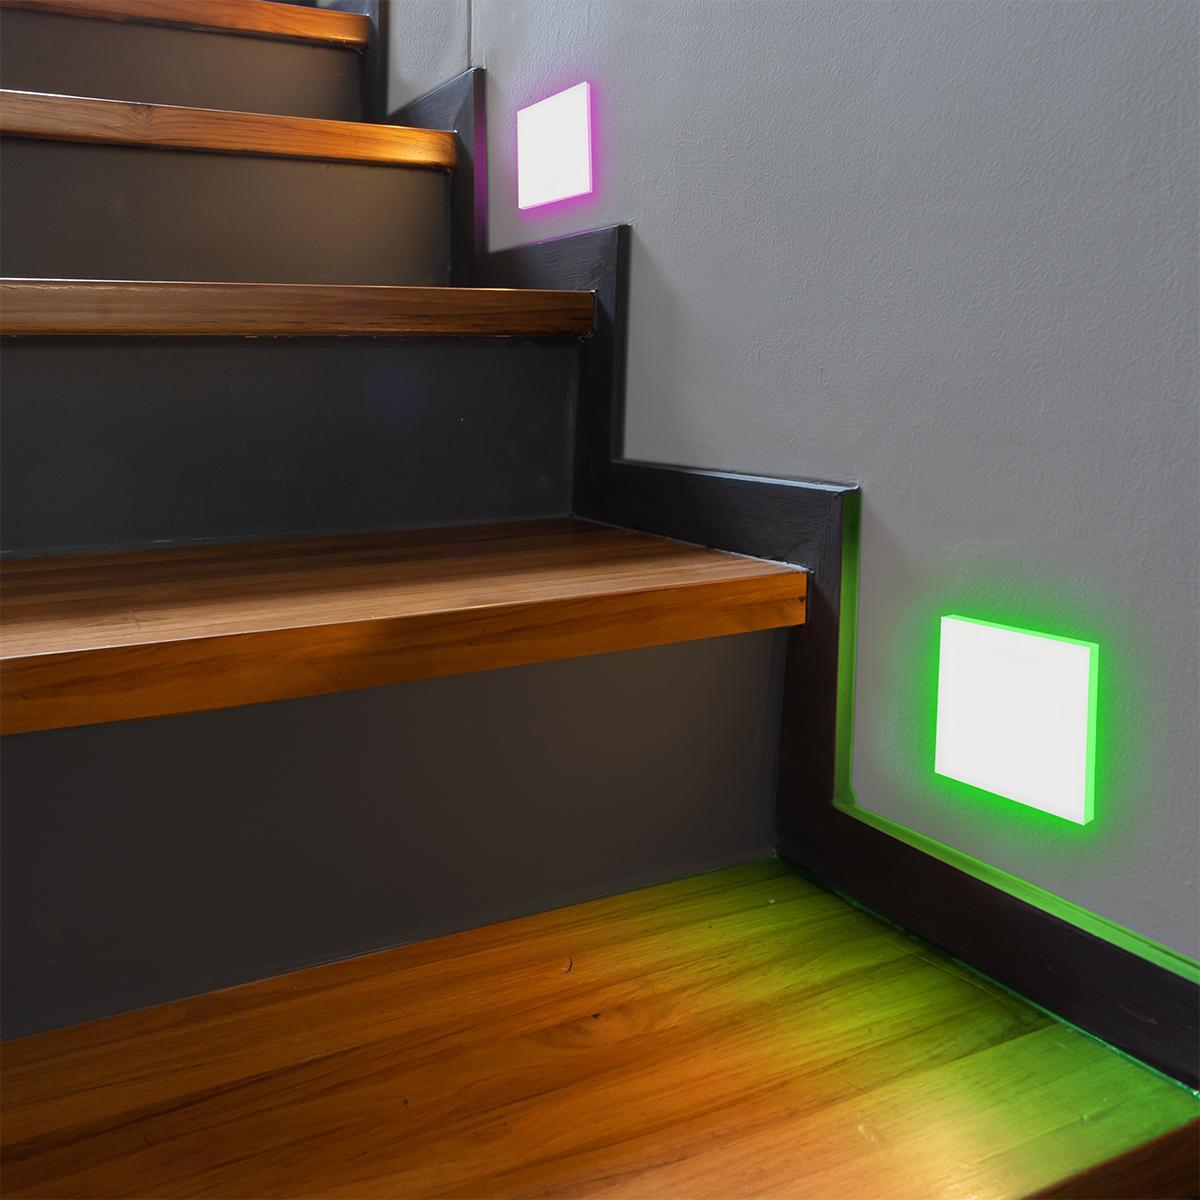 LED Treppenleuchte eckig weiß - Lichtfarbe: RGB Warmweiß 3W - Lichtaustritt: Linea